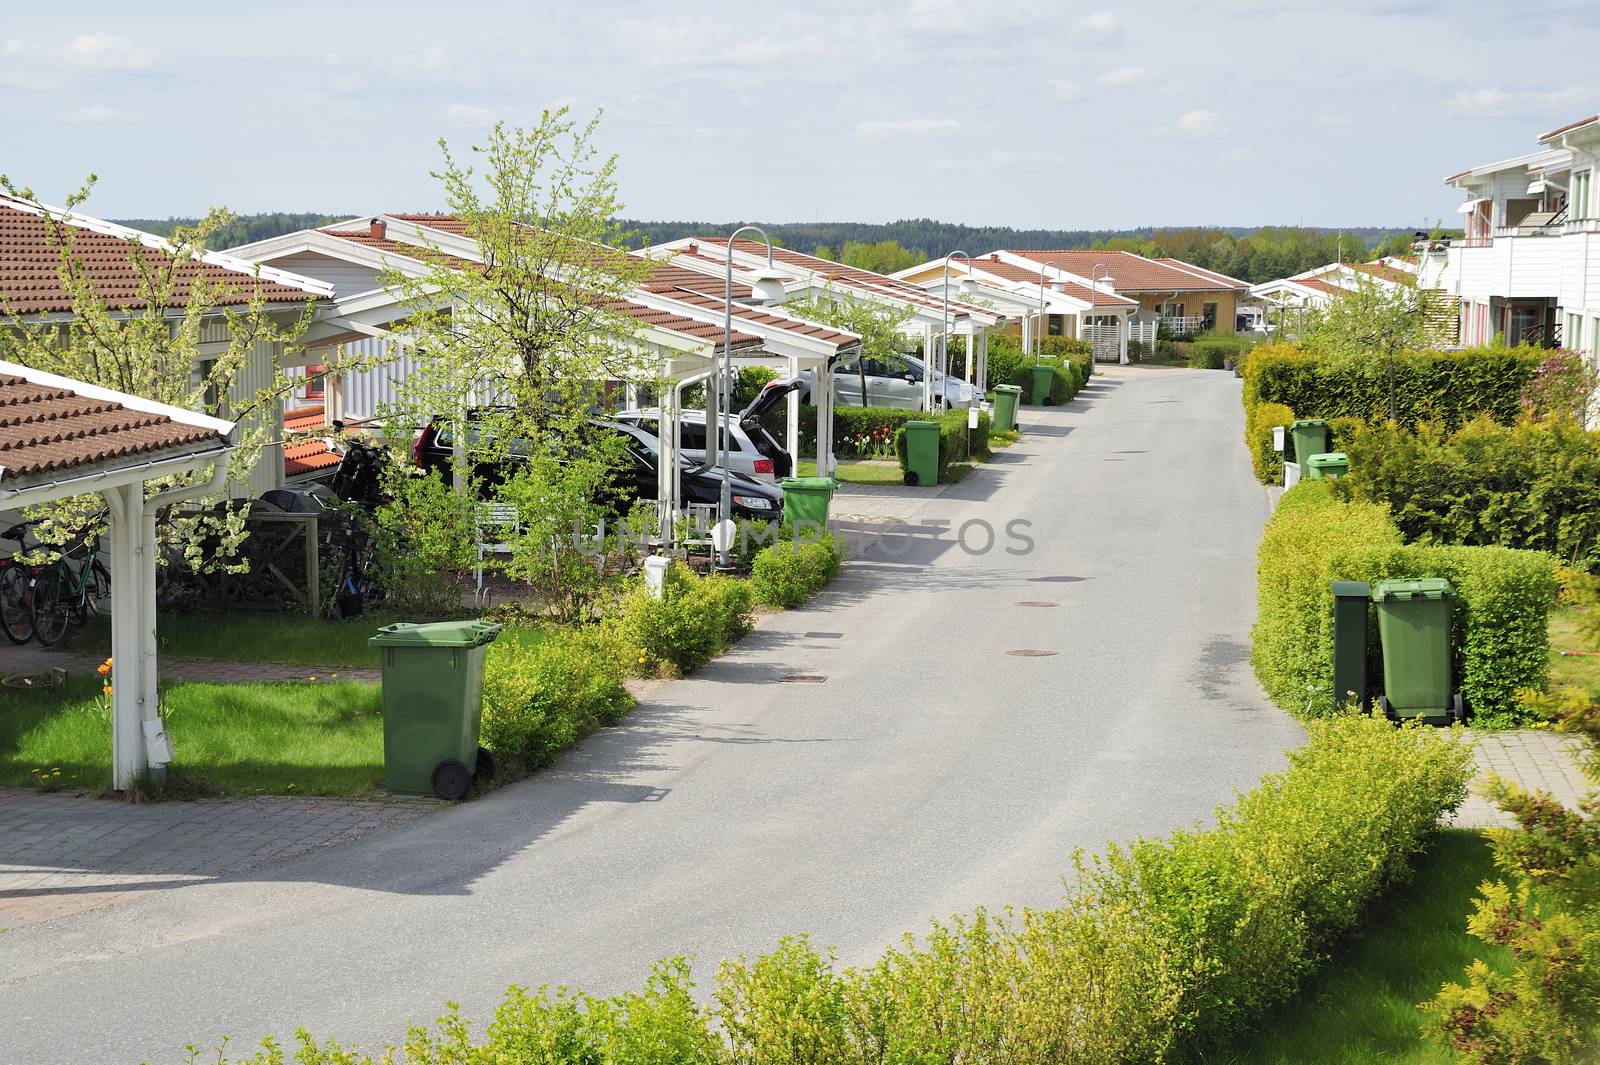 Houses in a row, Ekerö - Sweden